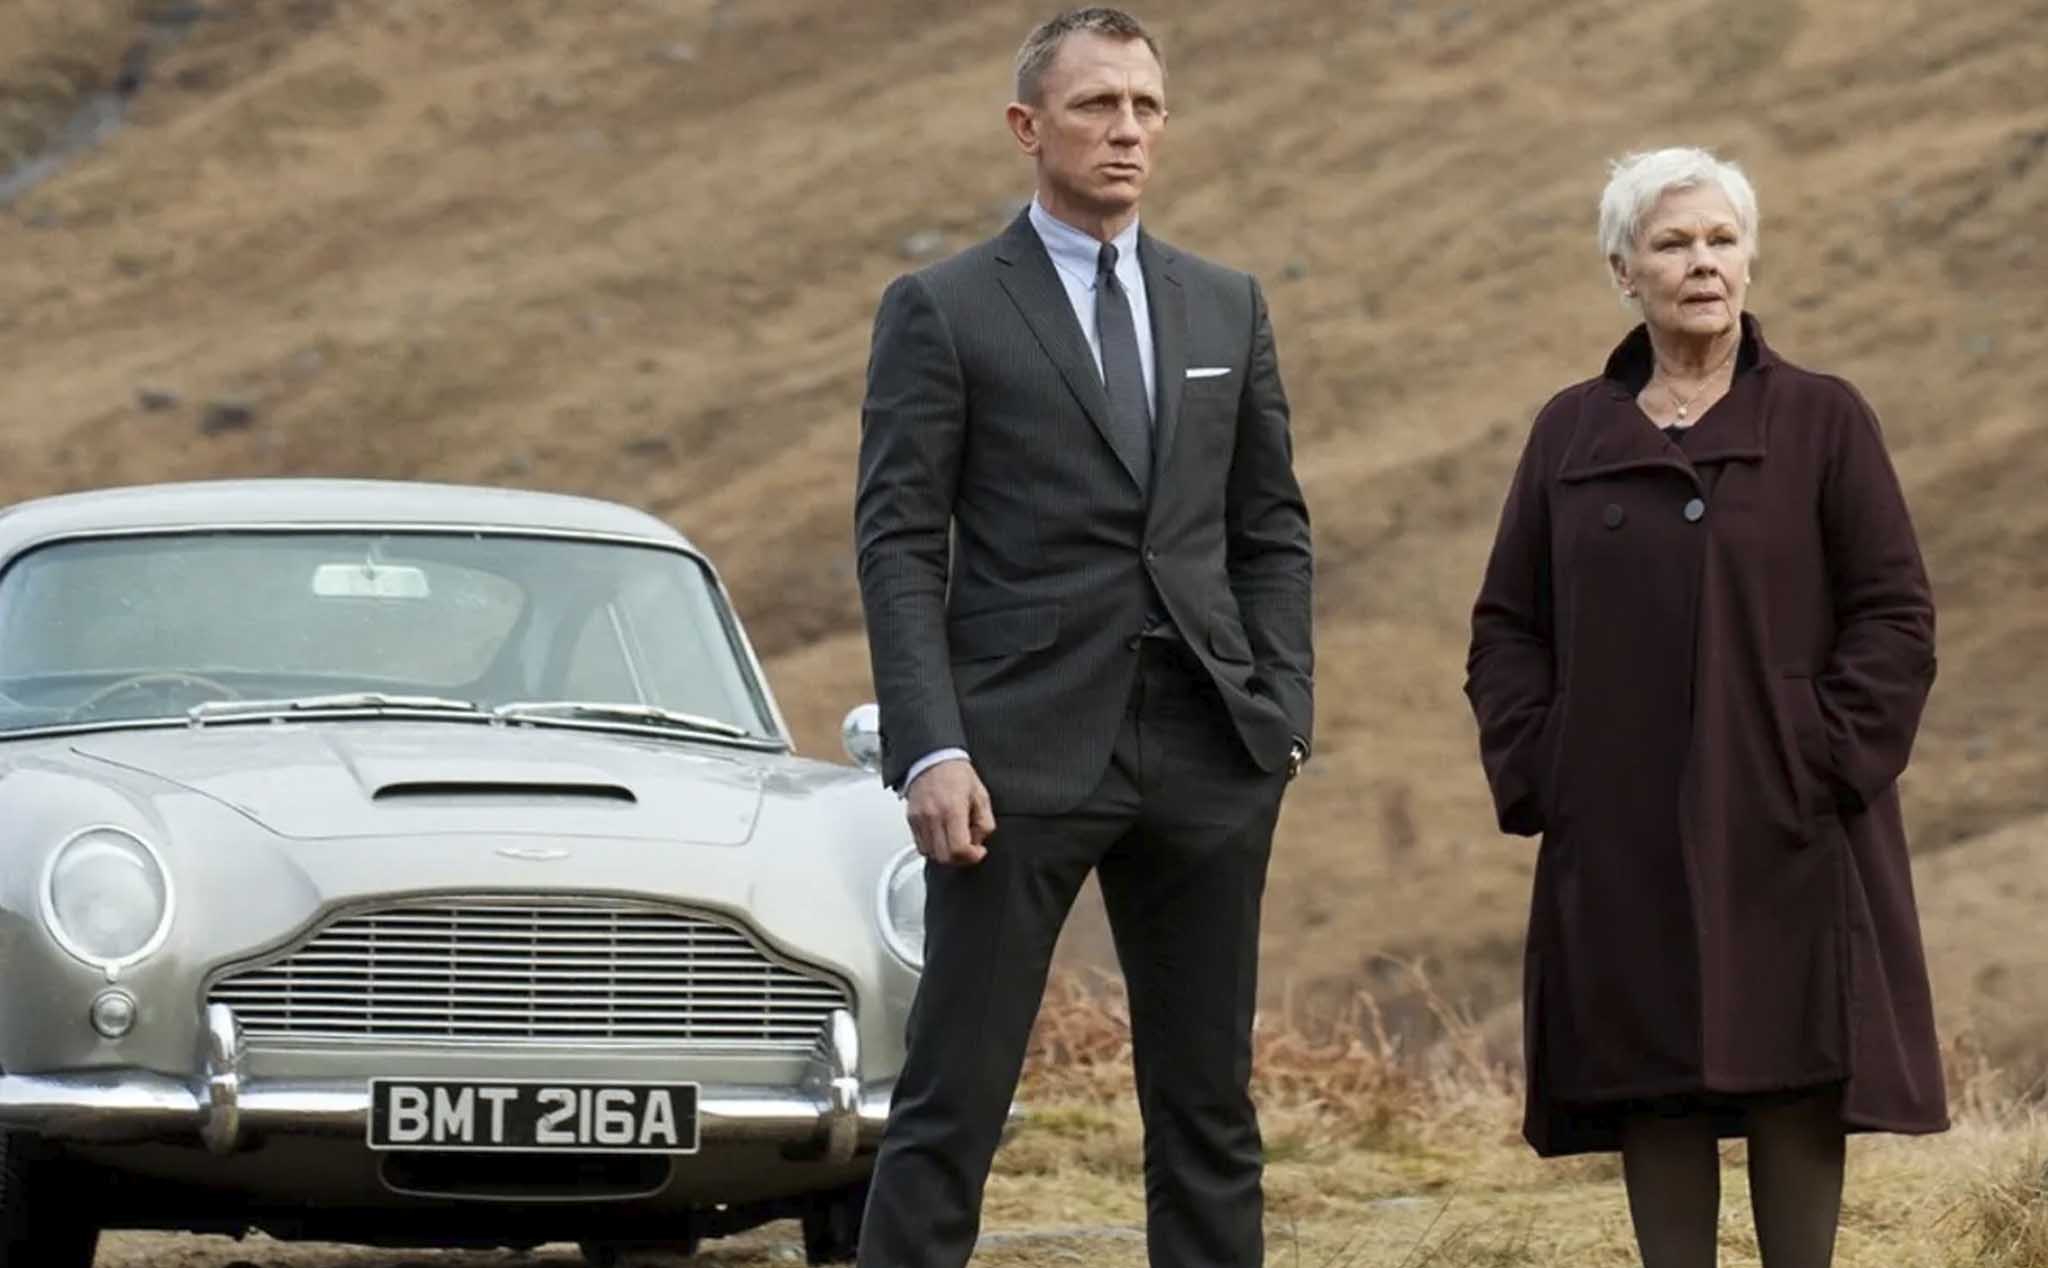 A licence to charge? Công nghệ mới nào sẽ được trình diễn trong tập phim mới về James Bond?